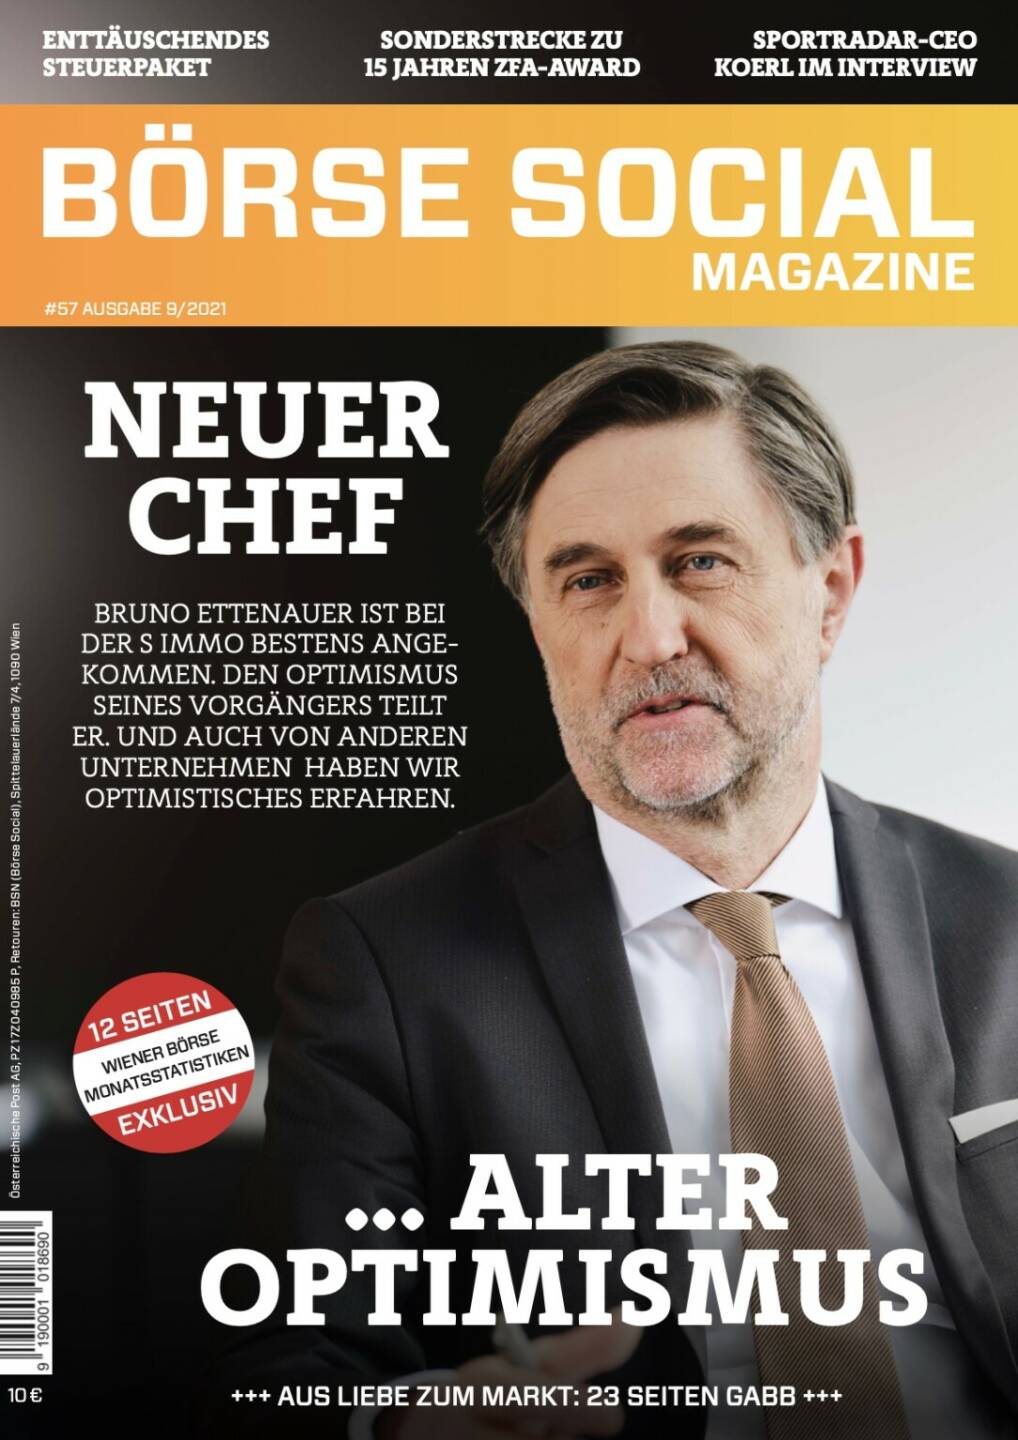 Magazine #57 - September 2021: Neuer Chef - Alter Optimismus: Bruno Ettenauer ist bei der S Immo bestens angekommen. Den Optimismus seines Vorgängers teilt er. Und auch von anderen Unternehmen  haben wir optimistisches erfahren.